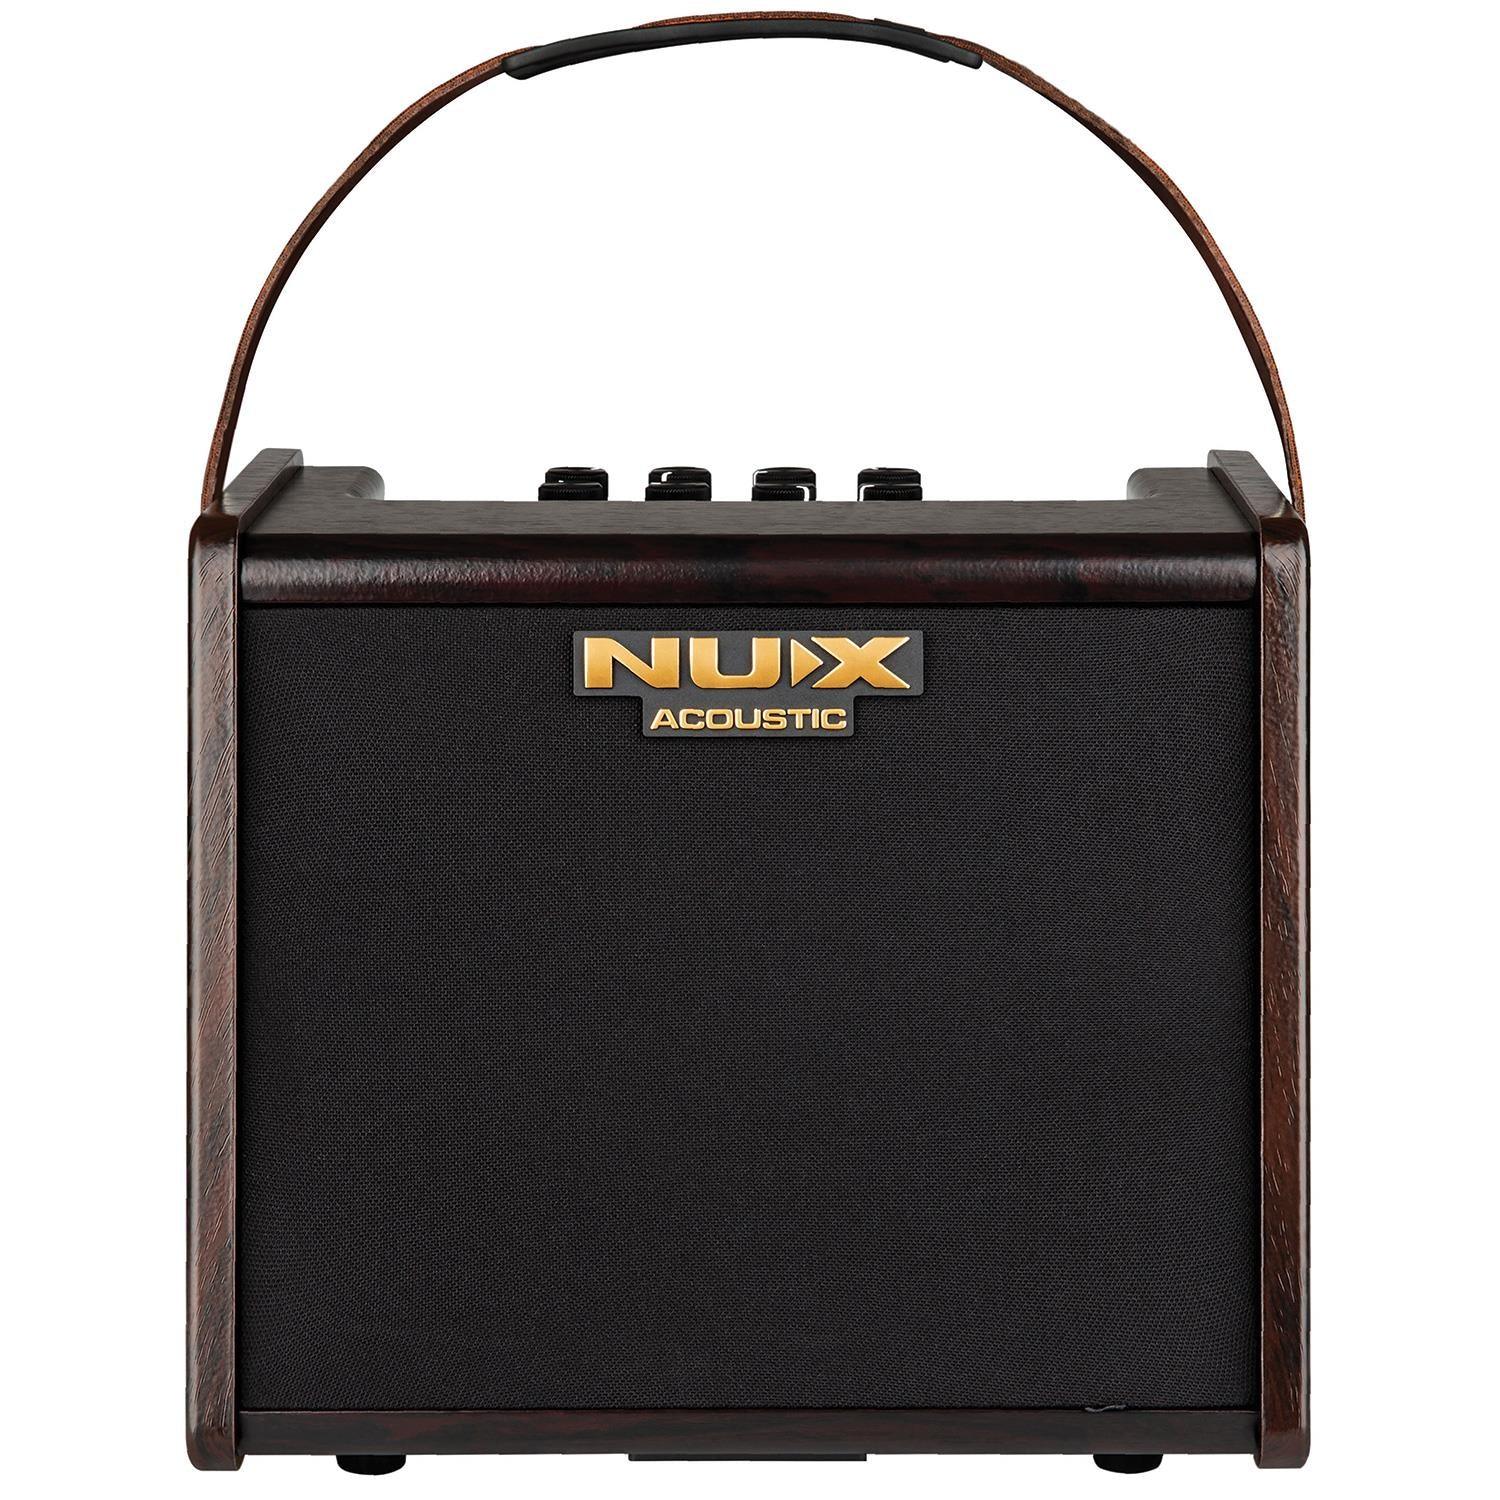 NUX AC-25 Portable Acoustic Amplifier - DY Pro Audio